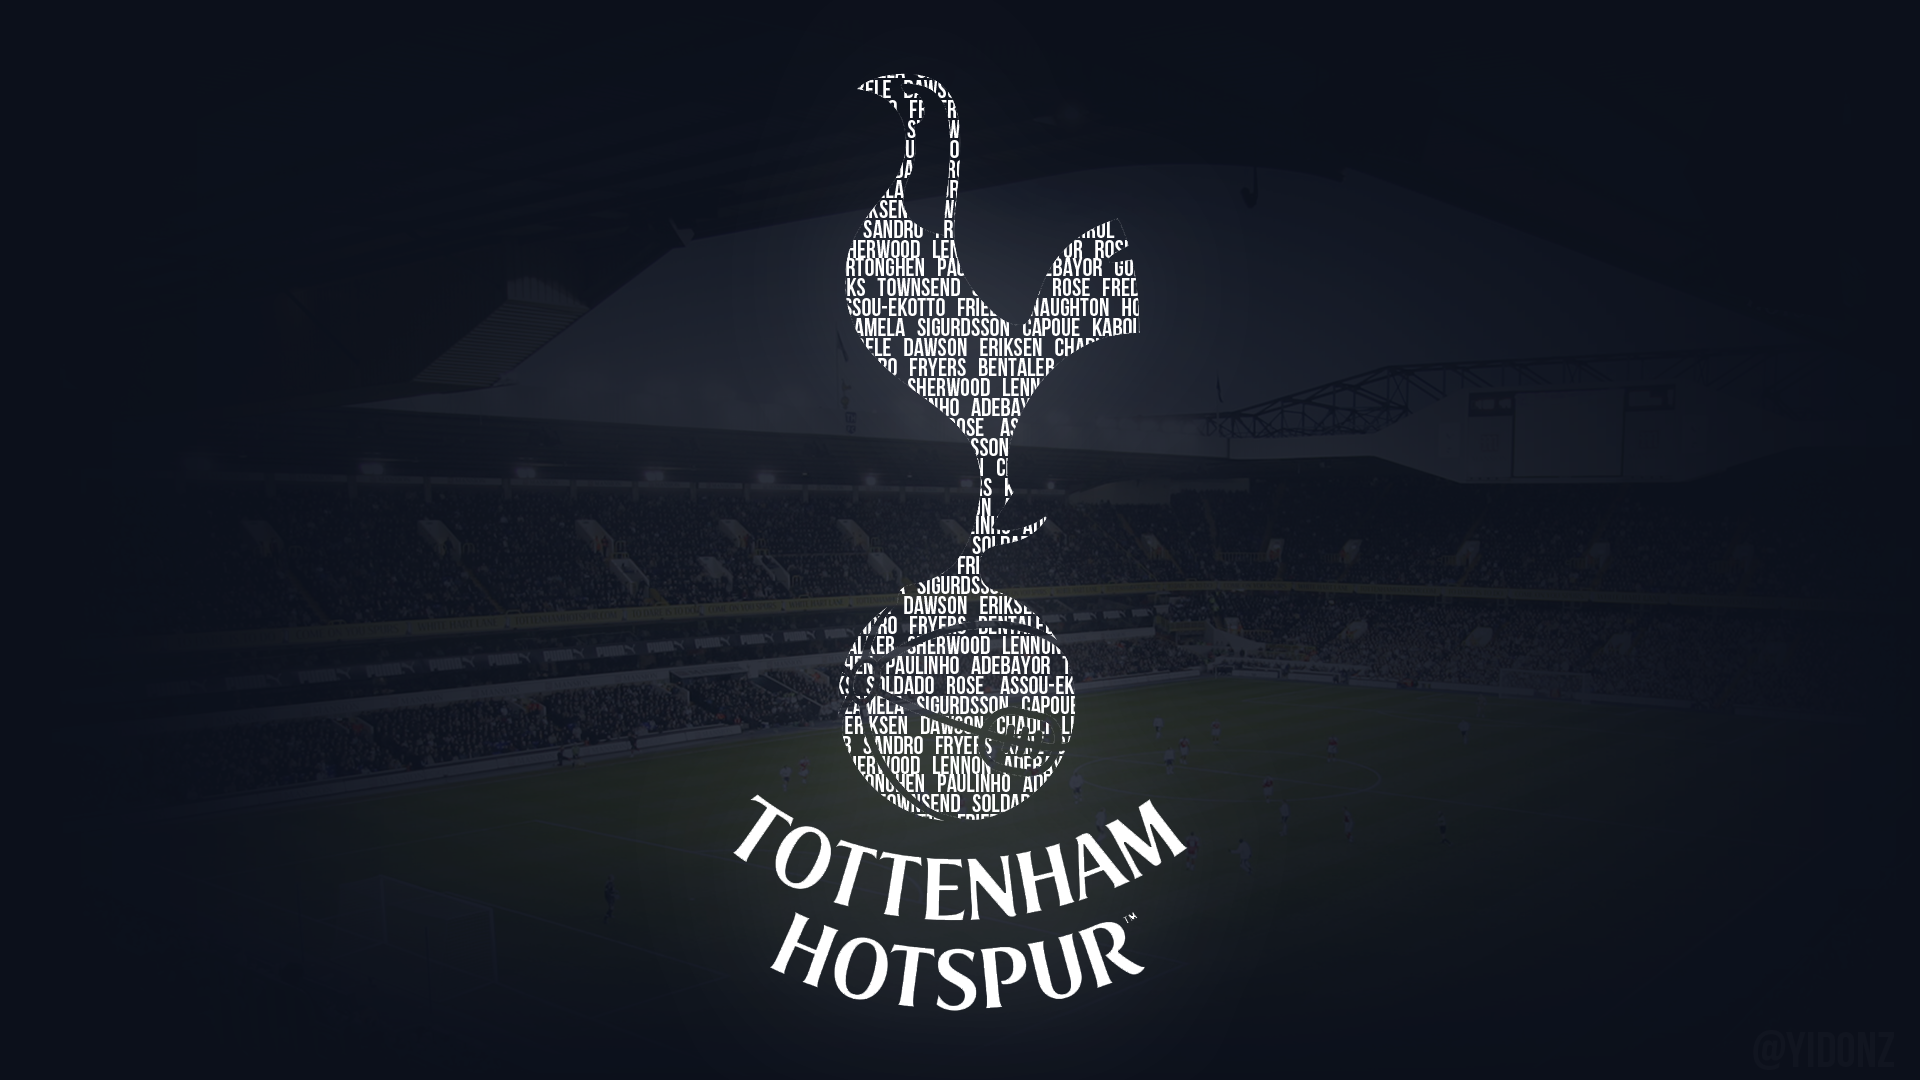 Tottenham Hotspur Wallpaper For Kindle